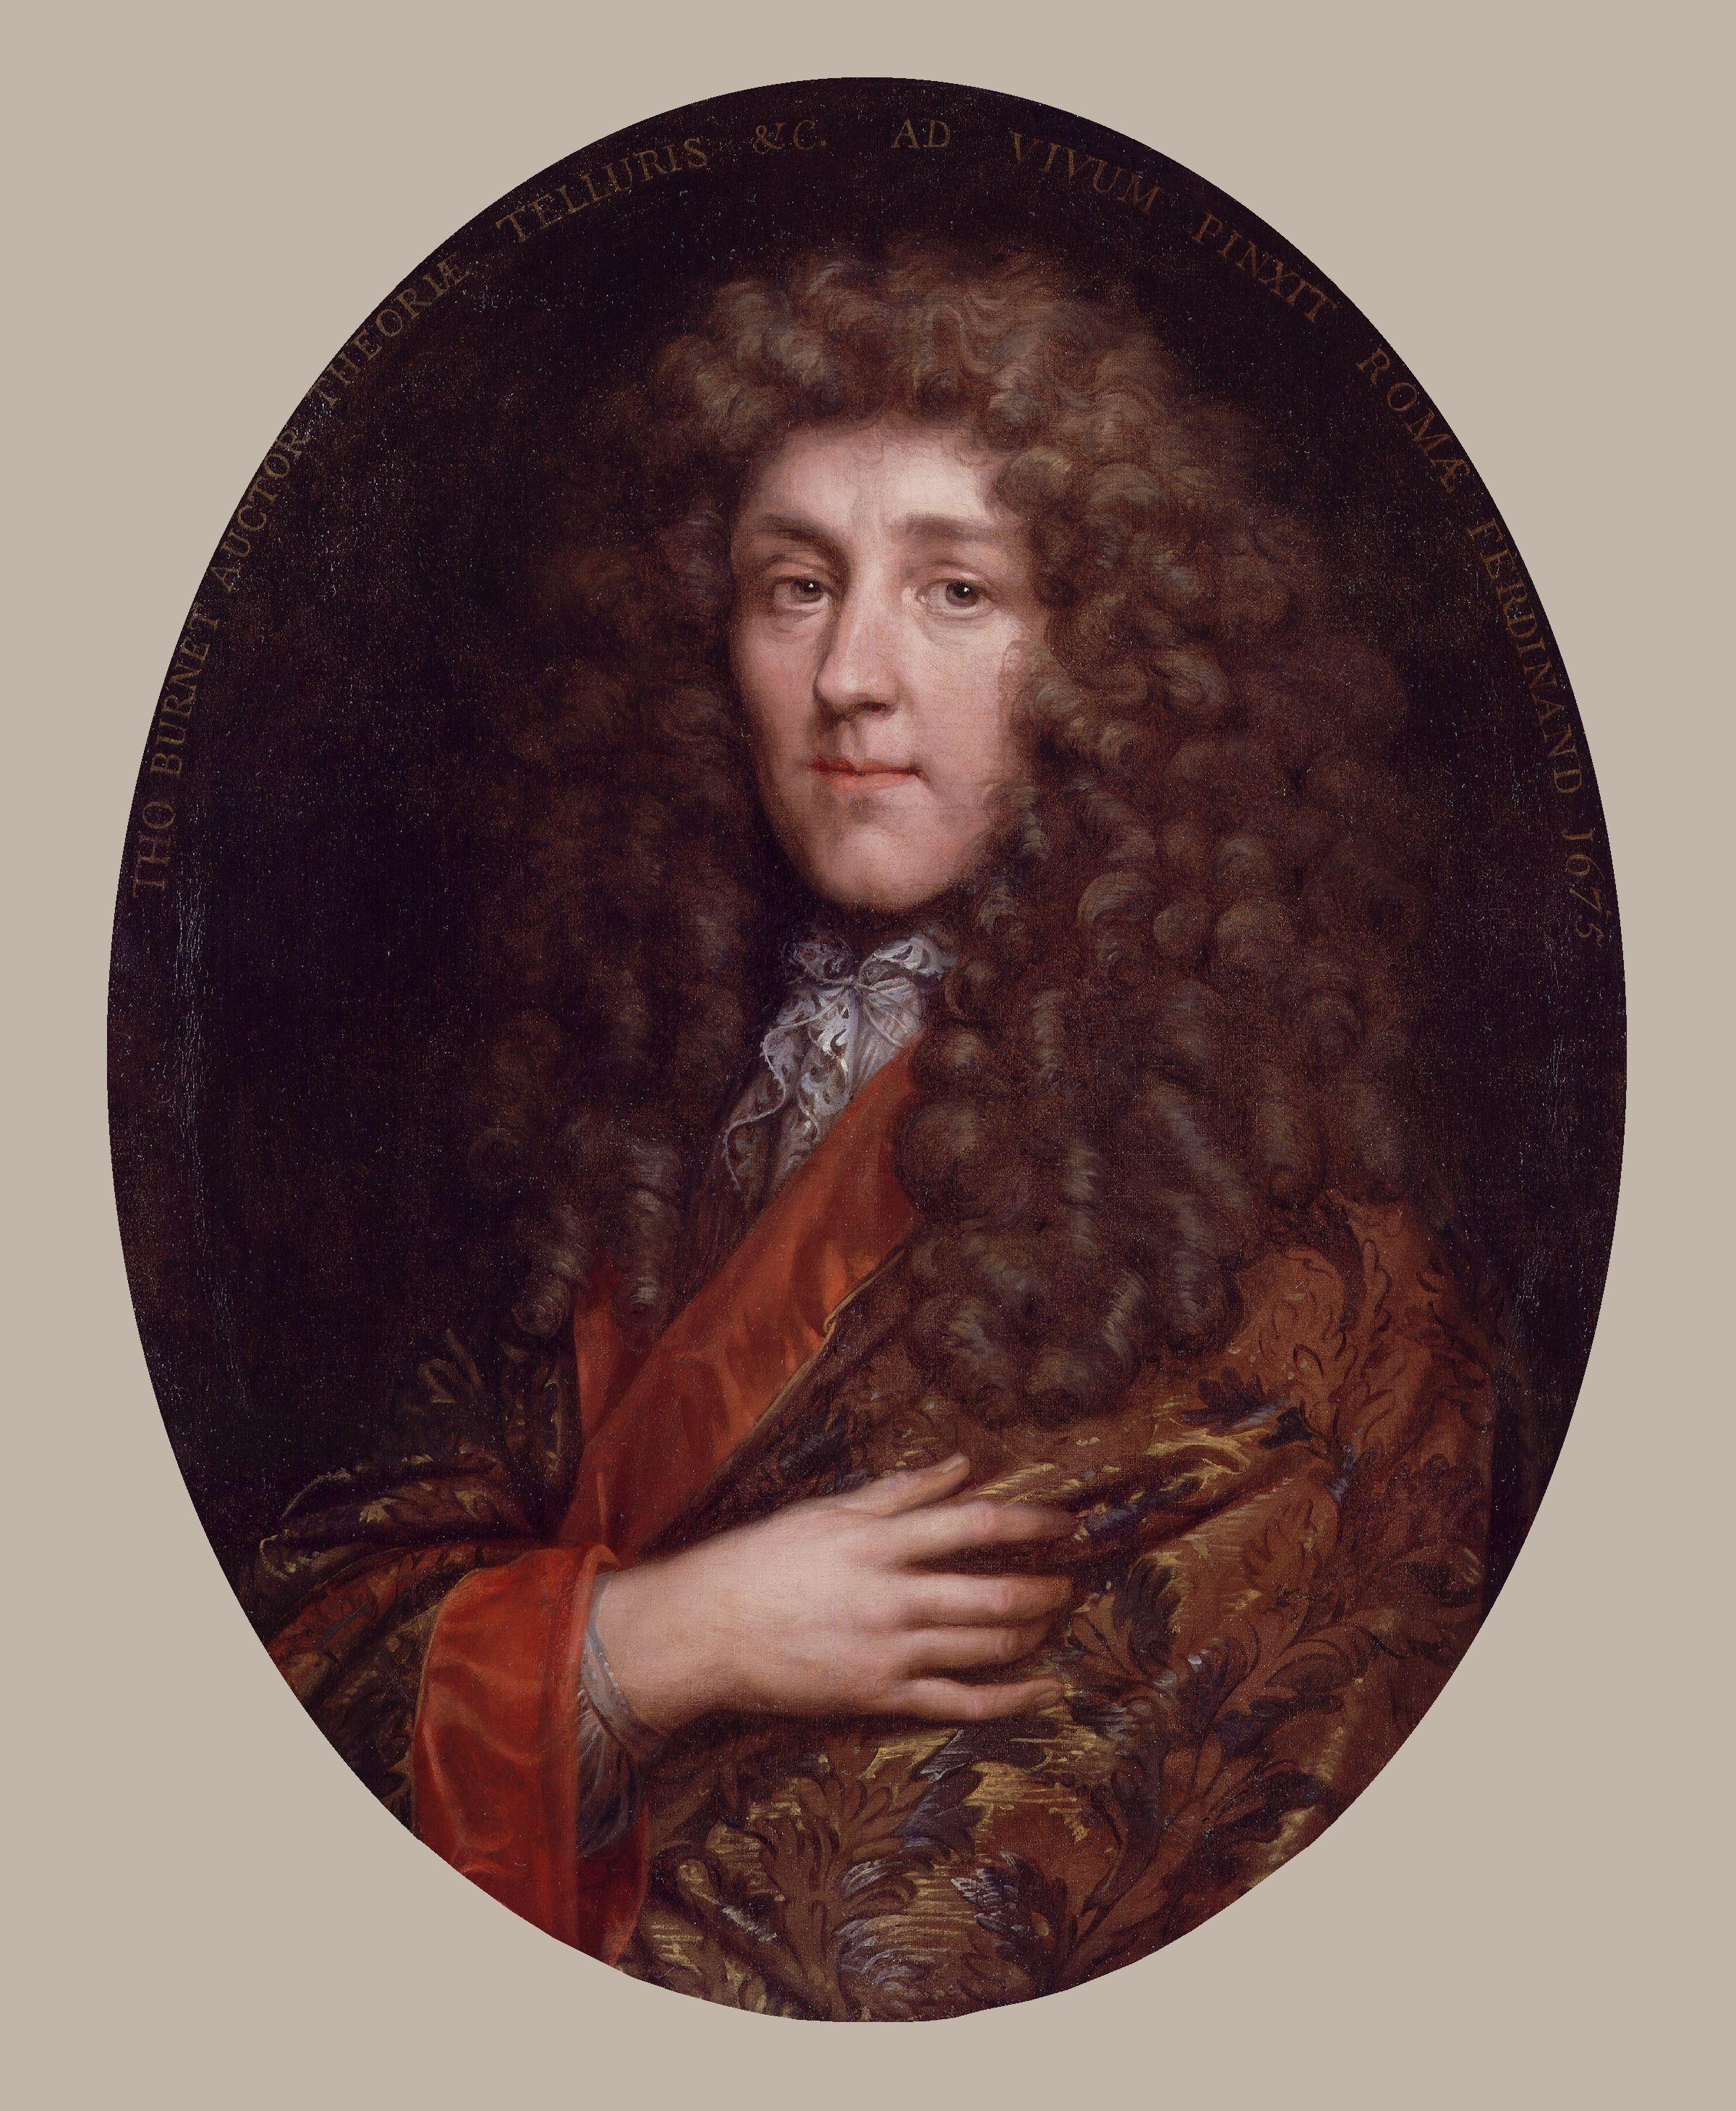 A portrait of Thomas Burnet